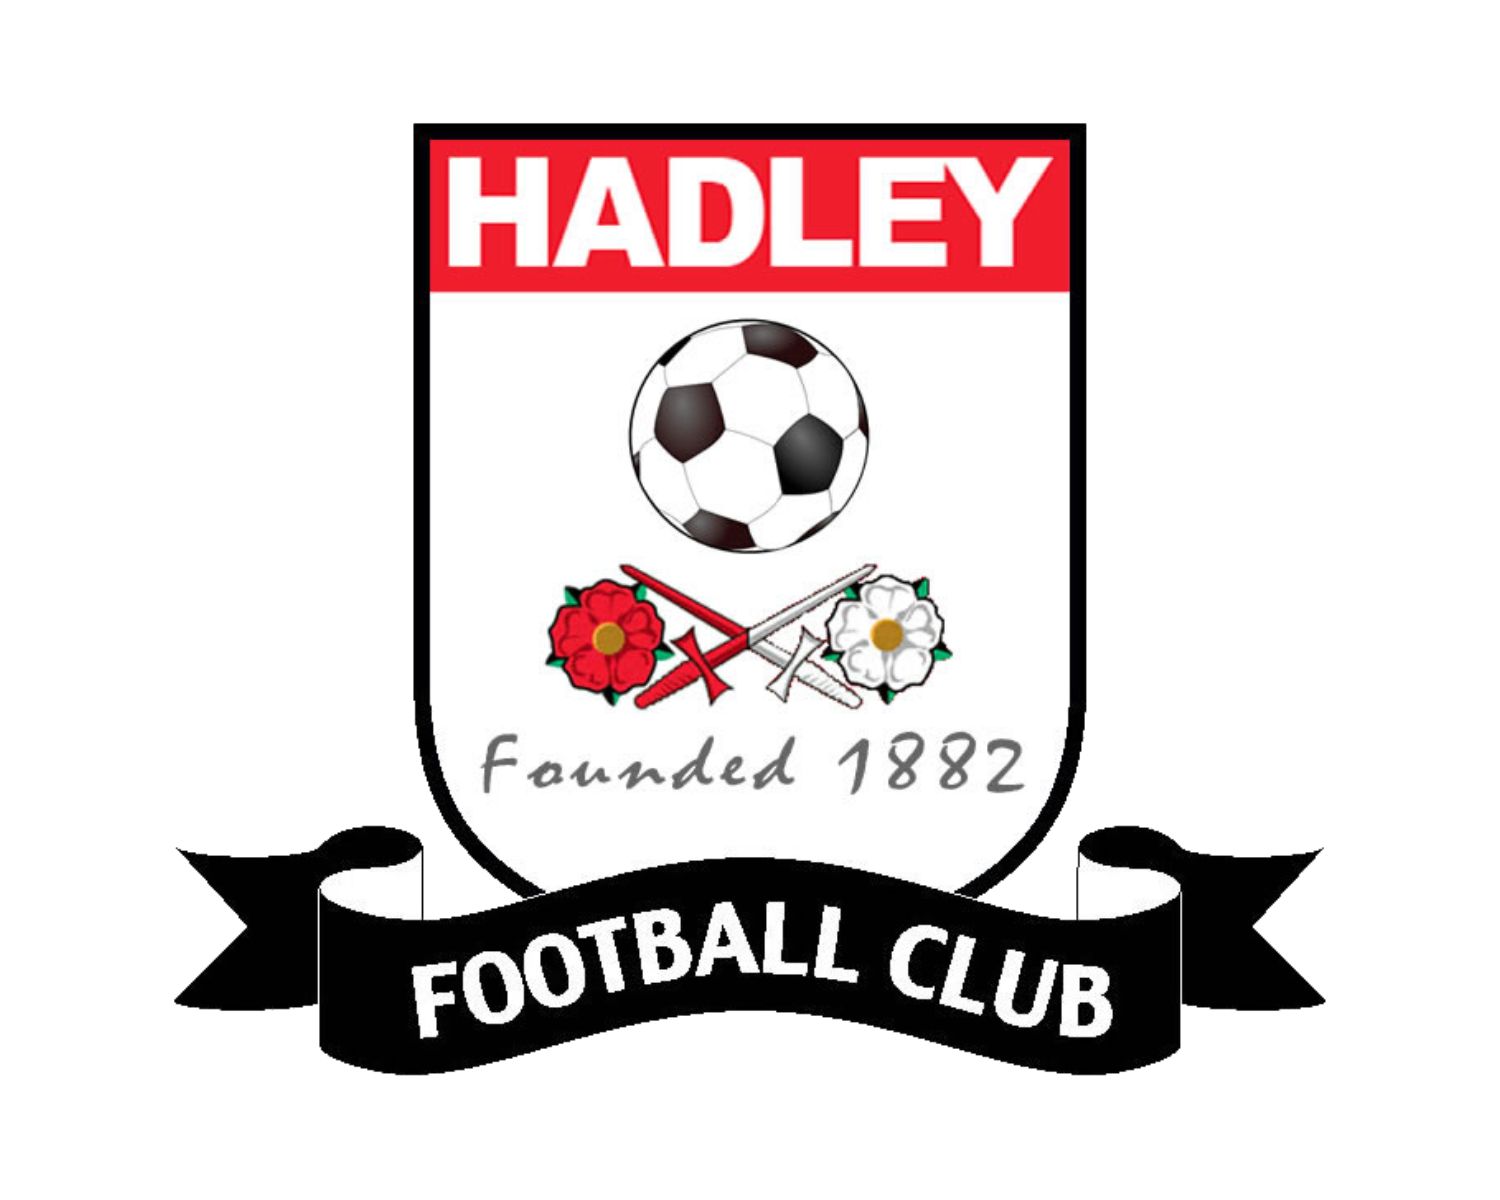 hadley-fc-23-football-club-facts